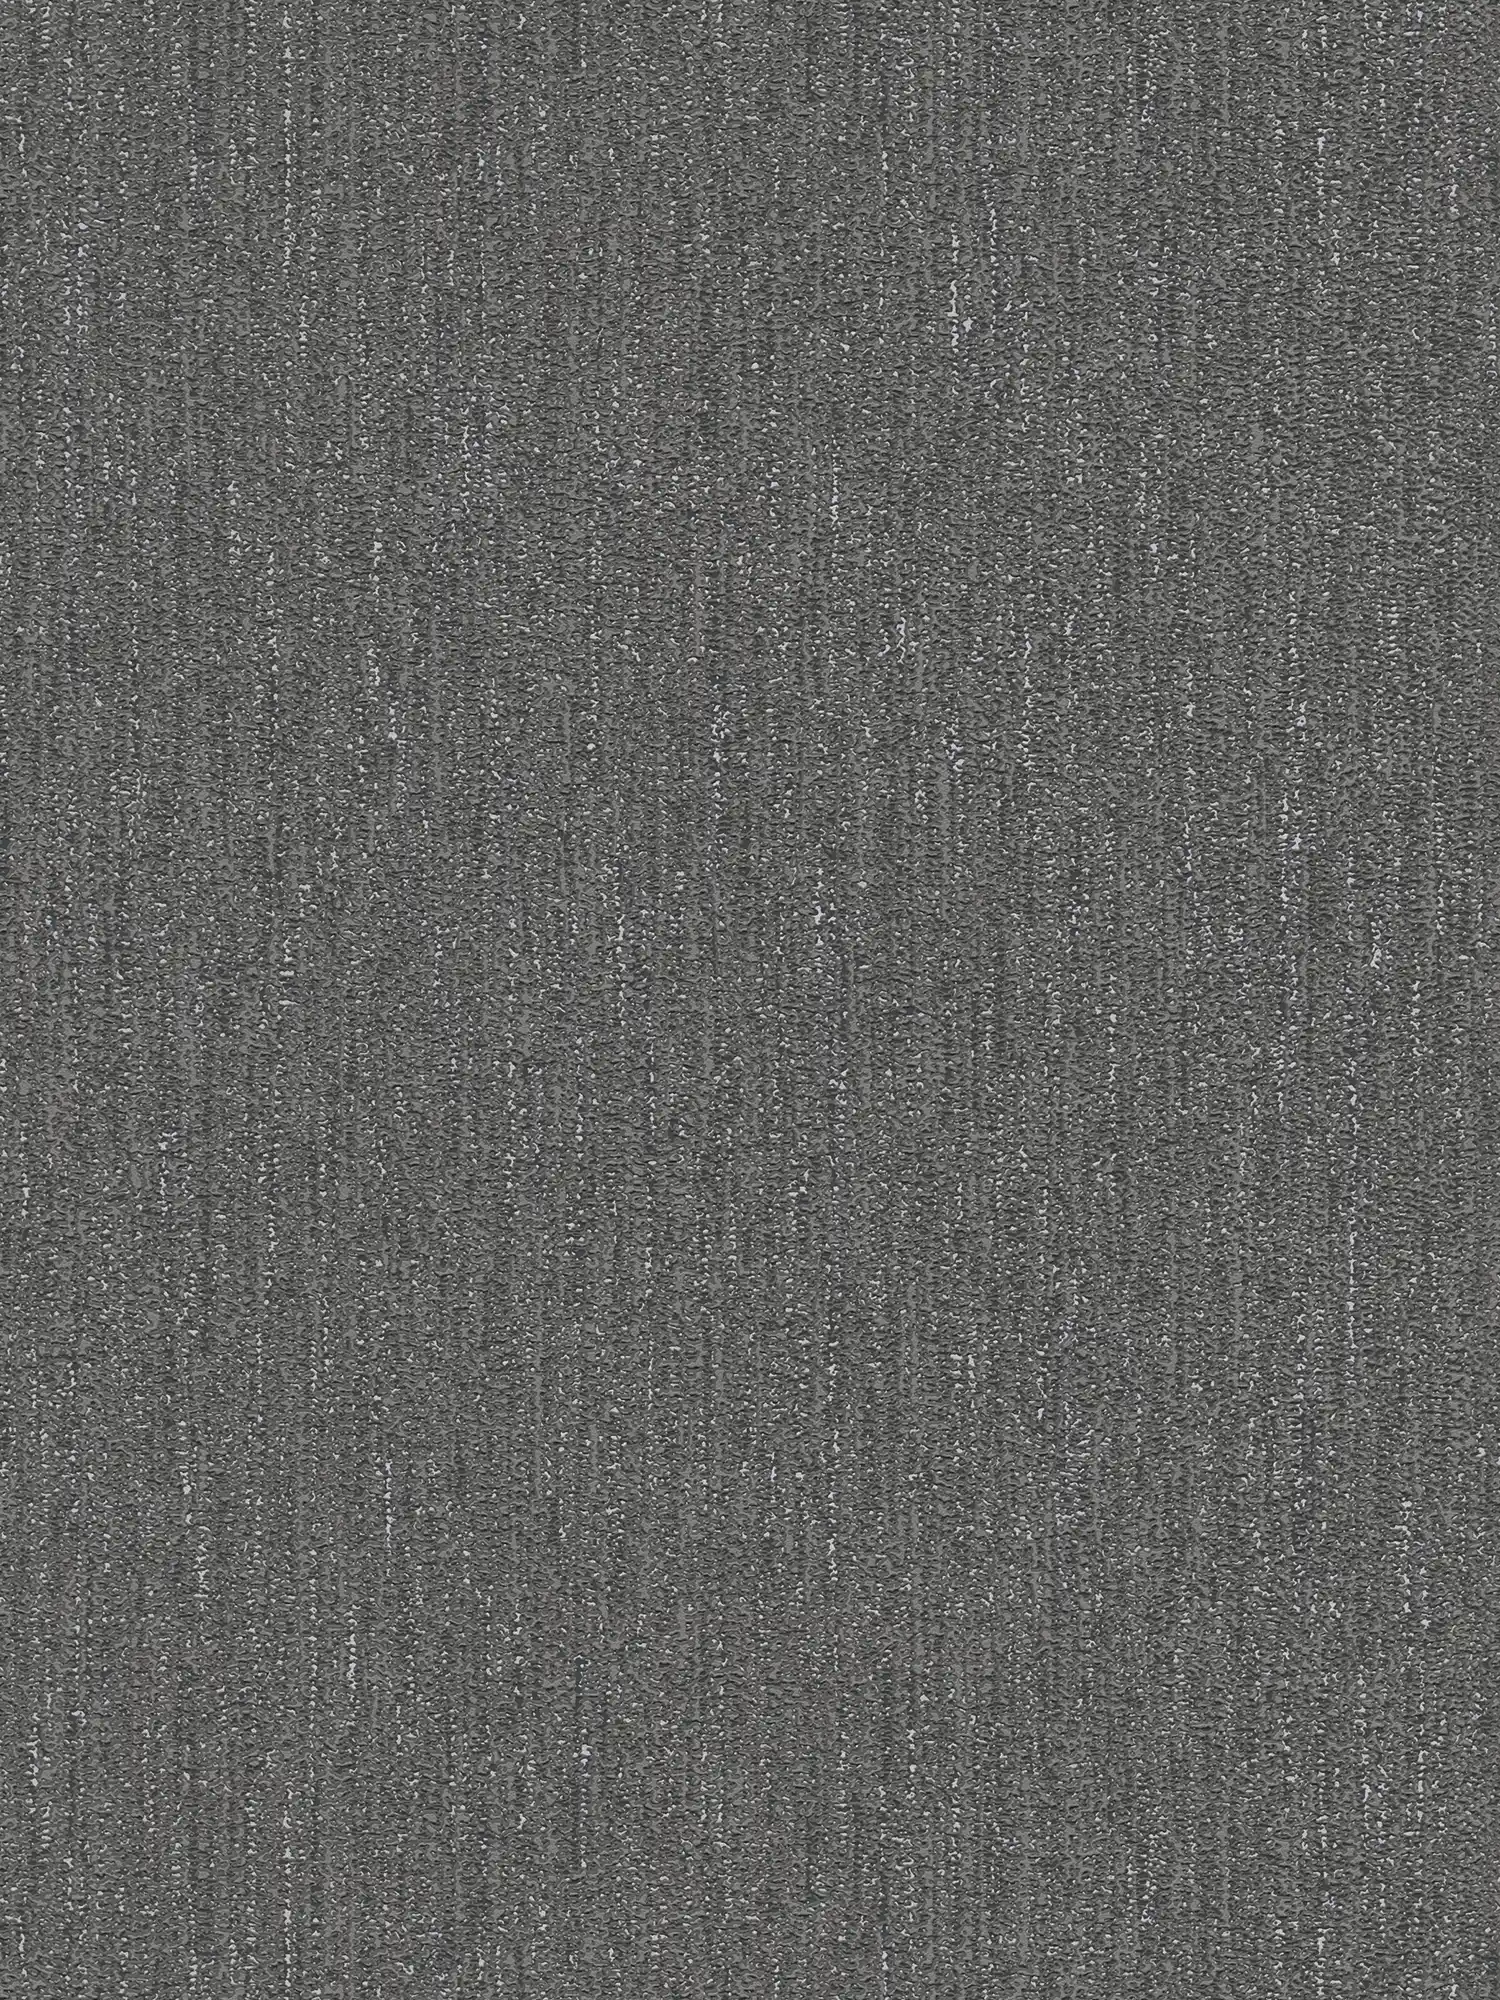 Licht glanzend behang met stofstructuur - zwart, grijs, zilver
